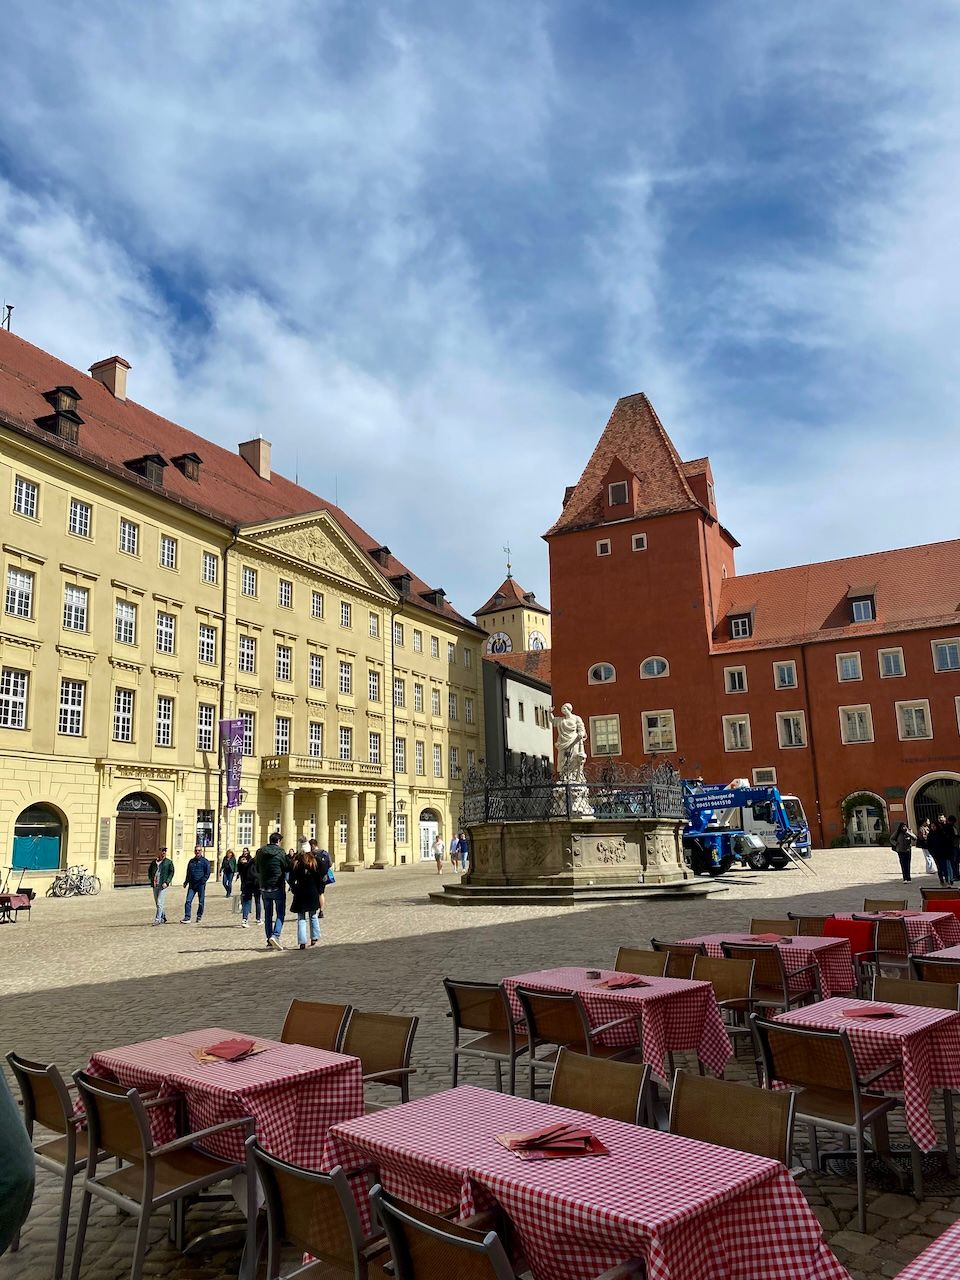 Kurztrip nach Regensburg - Stadtrundgang, Shoppingtipps und Unterkunft